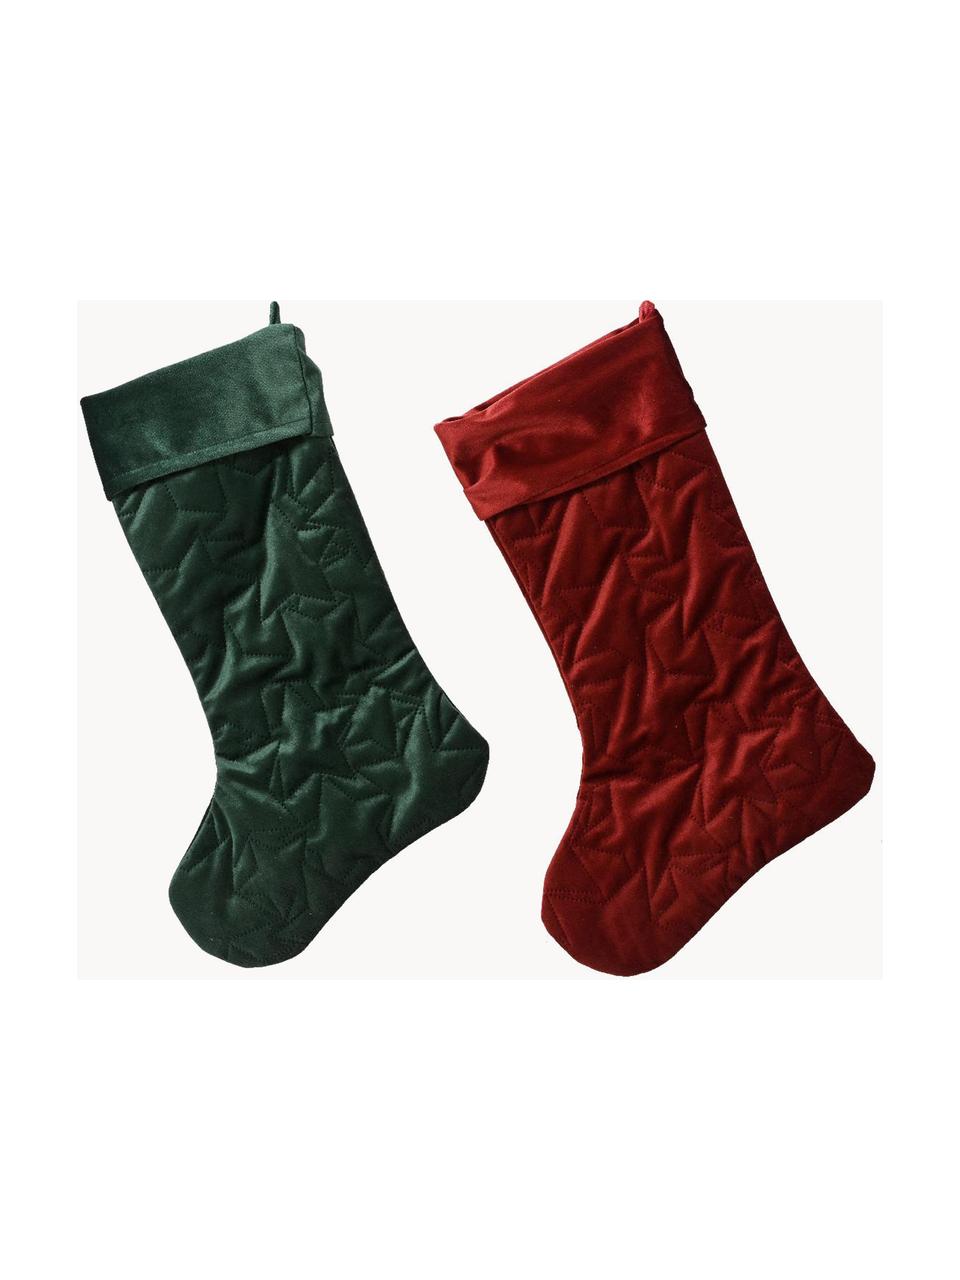 Fluwelen kousen Magical, set van 2, Fluweel (100% polyester), Fluweel donkergroen, donkerrood, B 28 x H 45 cm